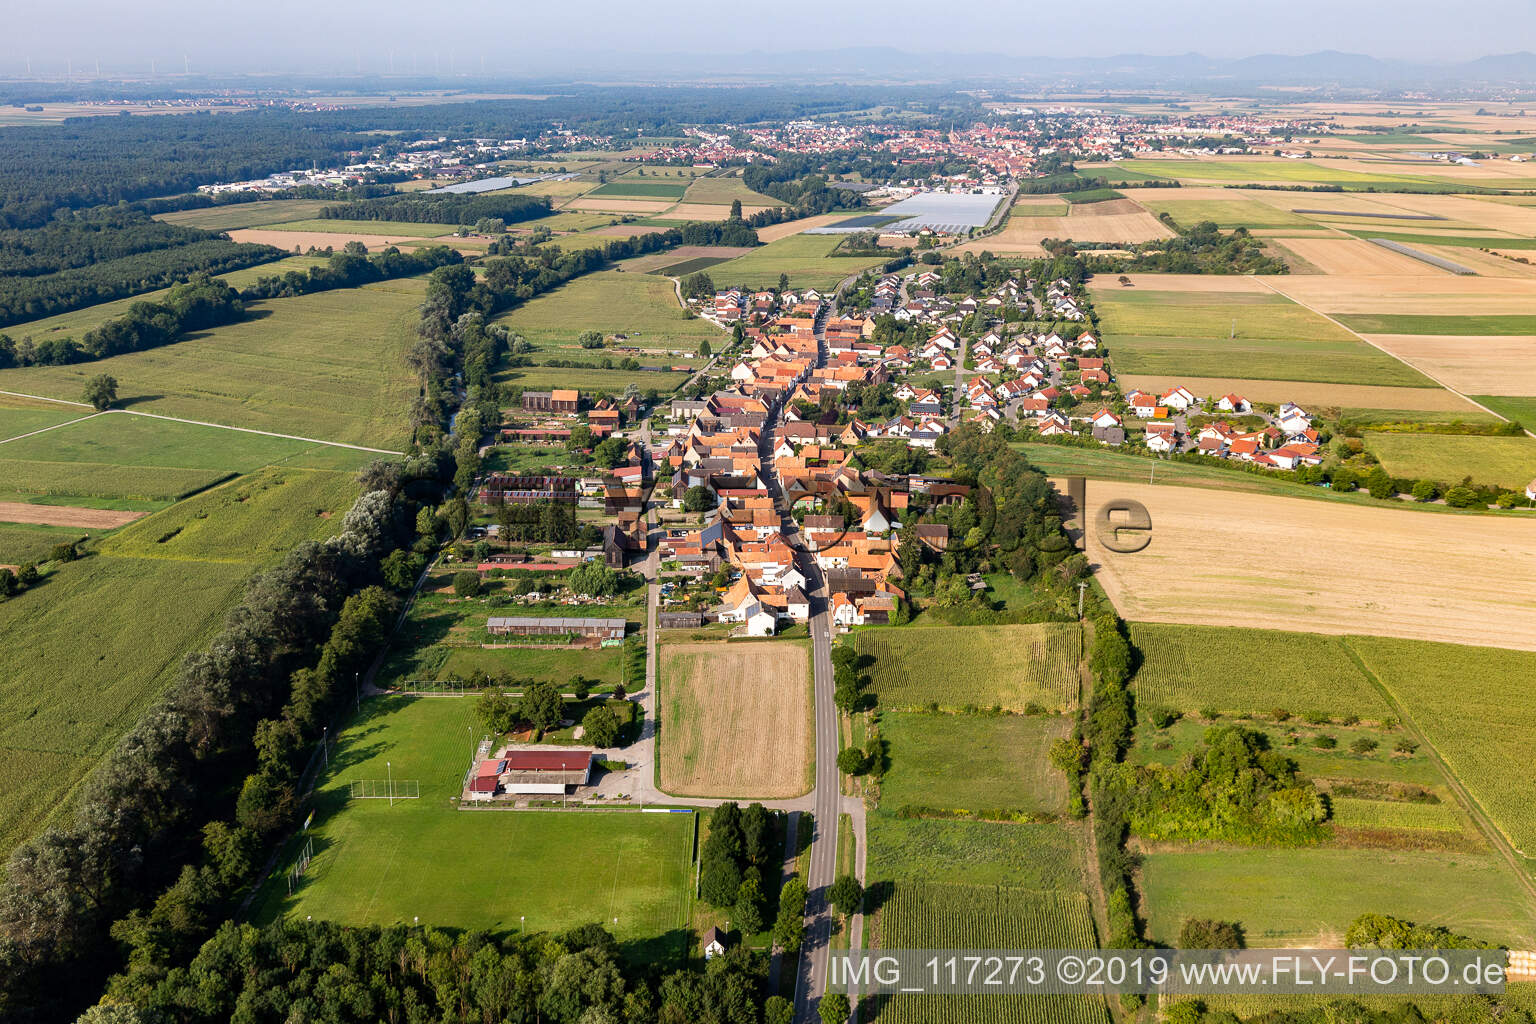 Drone image of Herxheimweyher in the state Rhineland-Palatinate, Germany